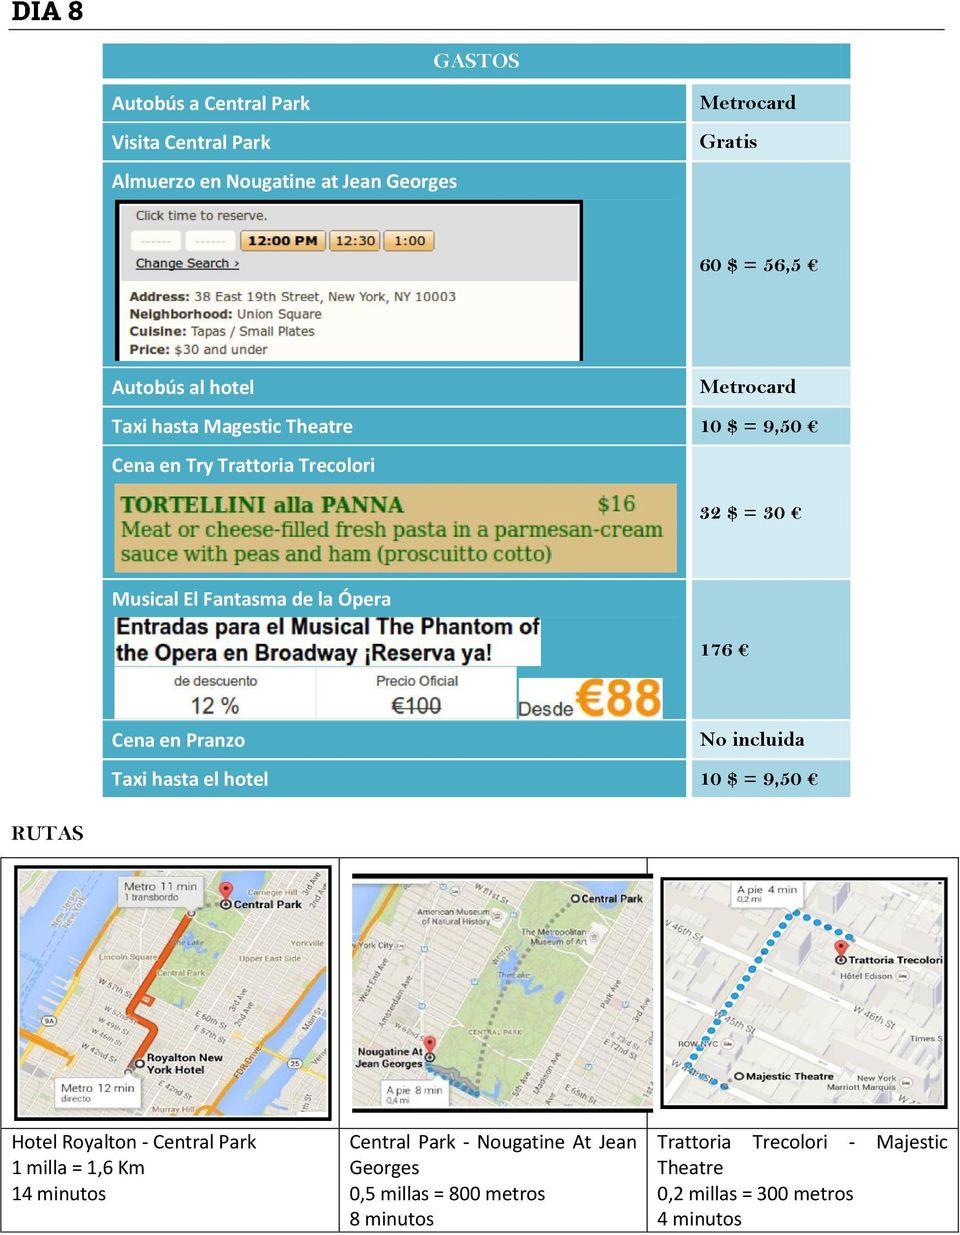 Pranzo No incluida Taxi hasta el hotel 10 $ = 9,50 RUTAS Hotel Royalton - Central Park 14 minutos Central Park -